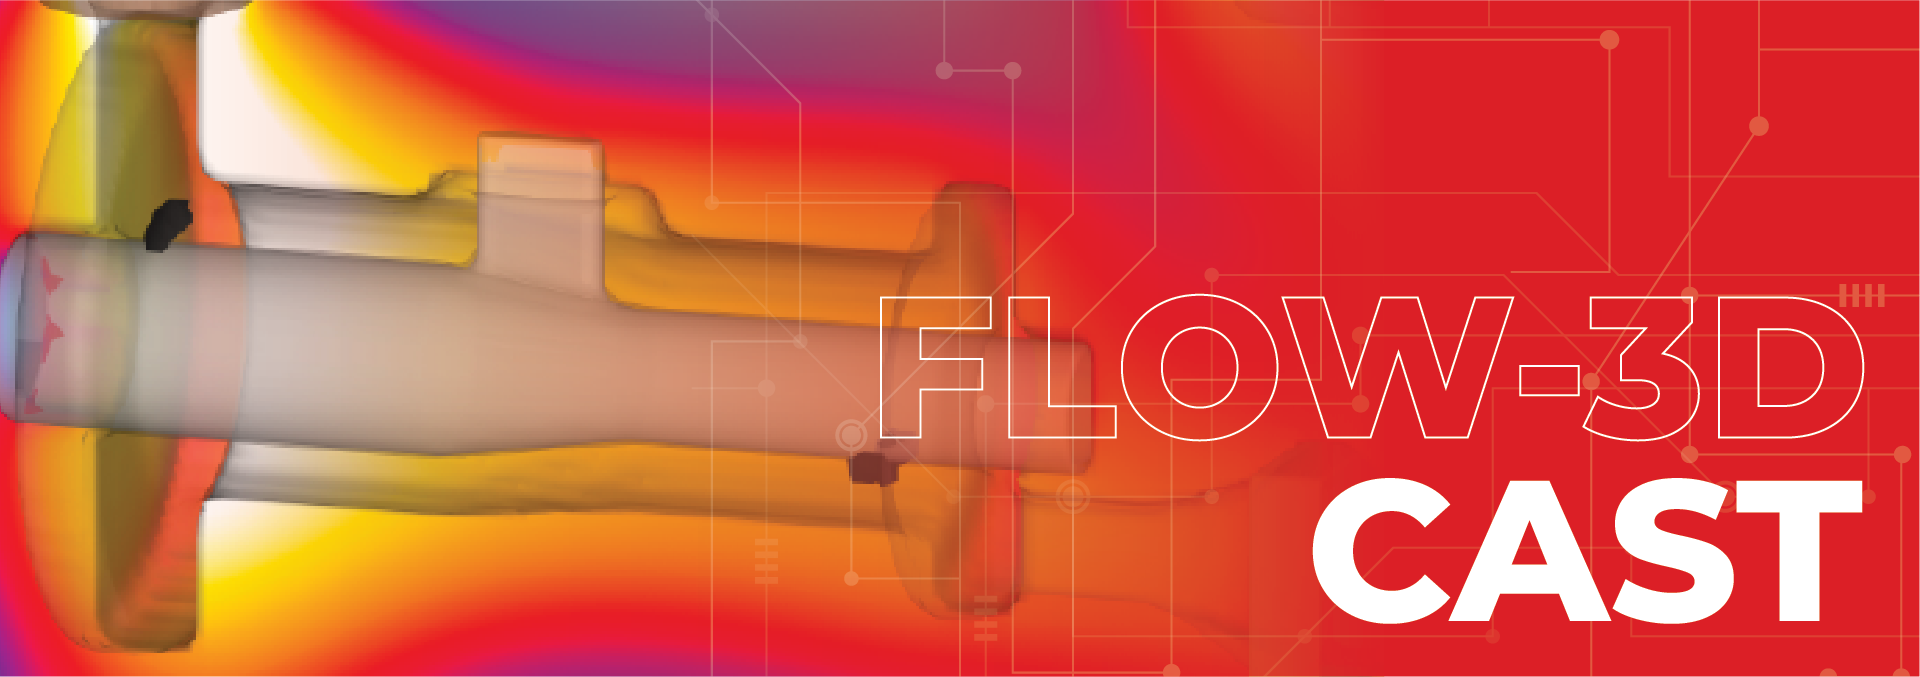 Flow-3D CAST